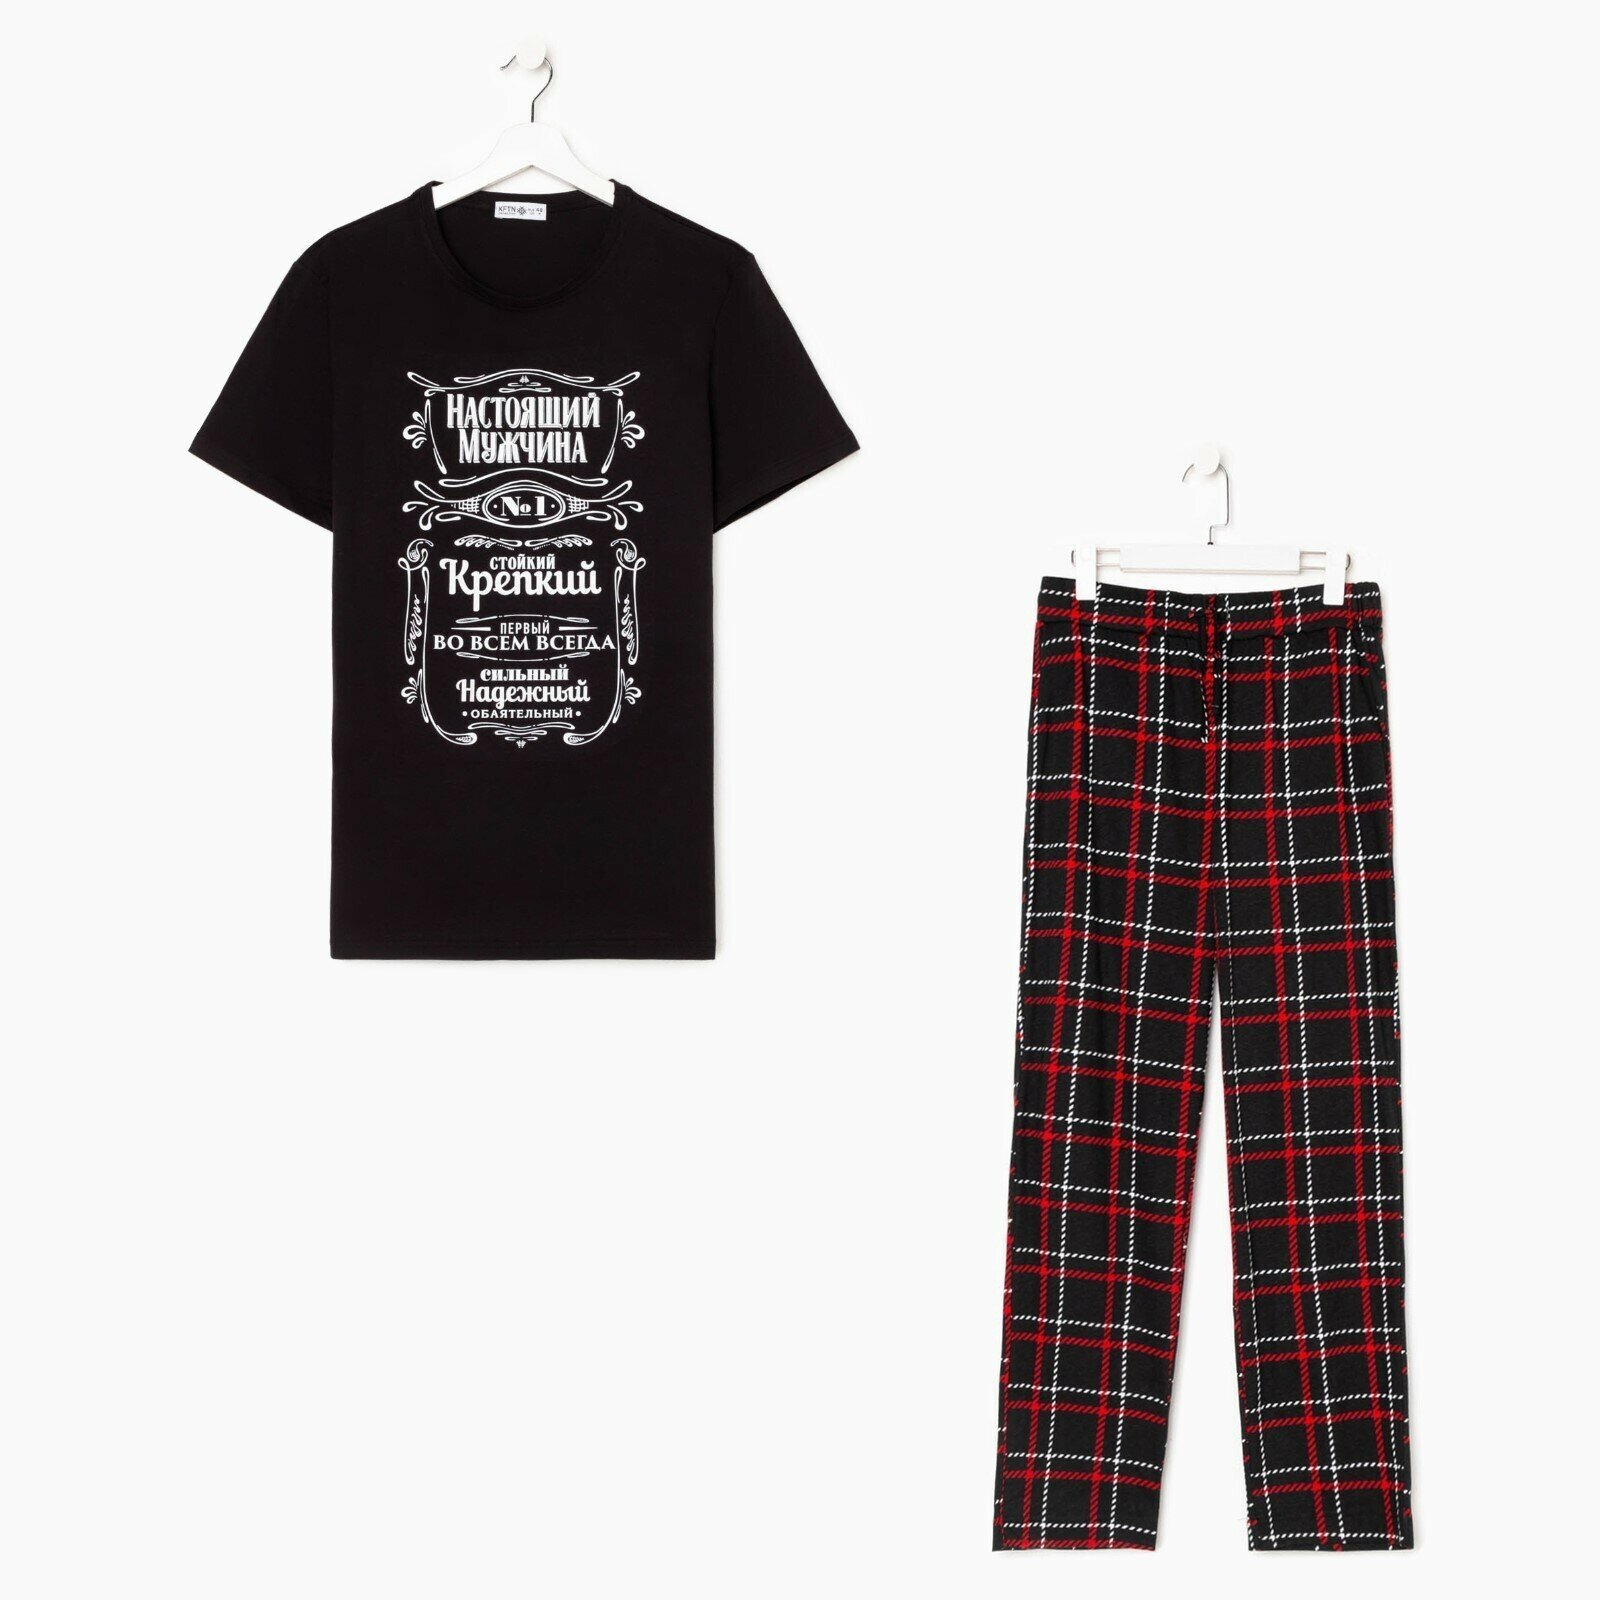 Пижама Kaftan, футболка, брюки, размер 54, черный - фотография № 9